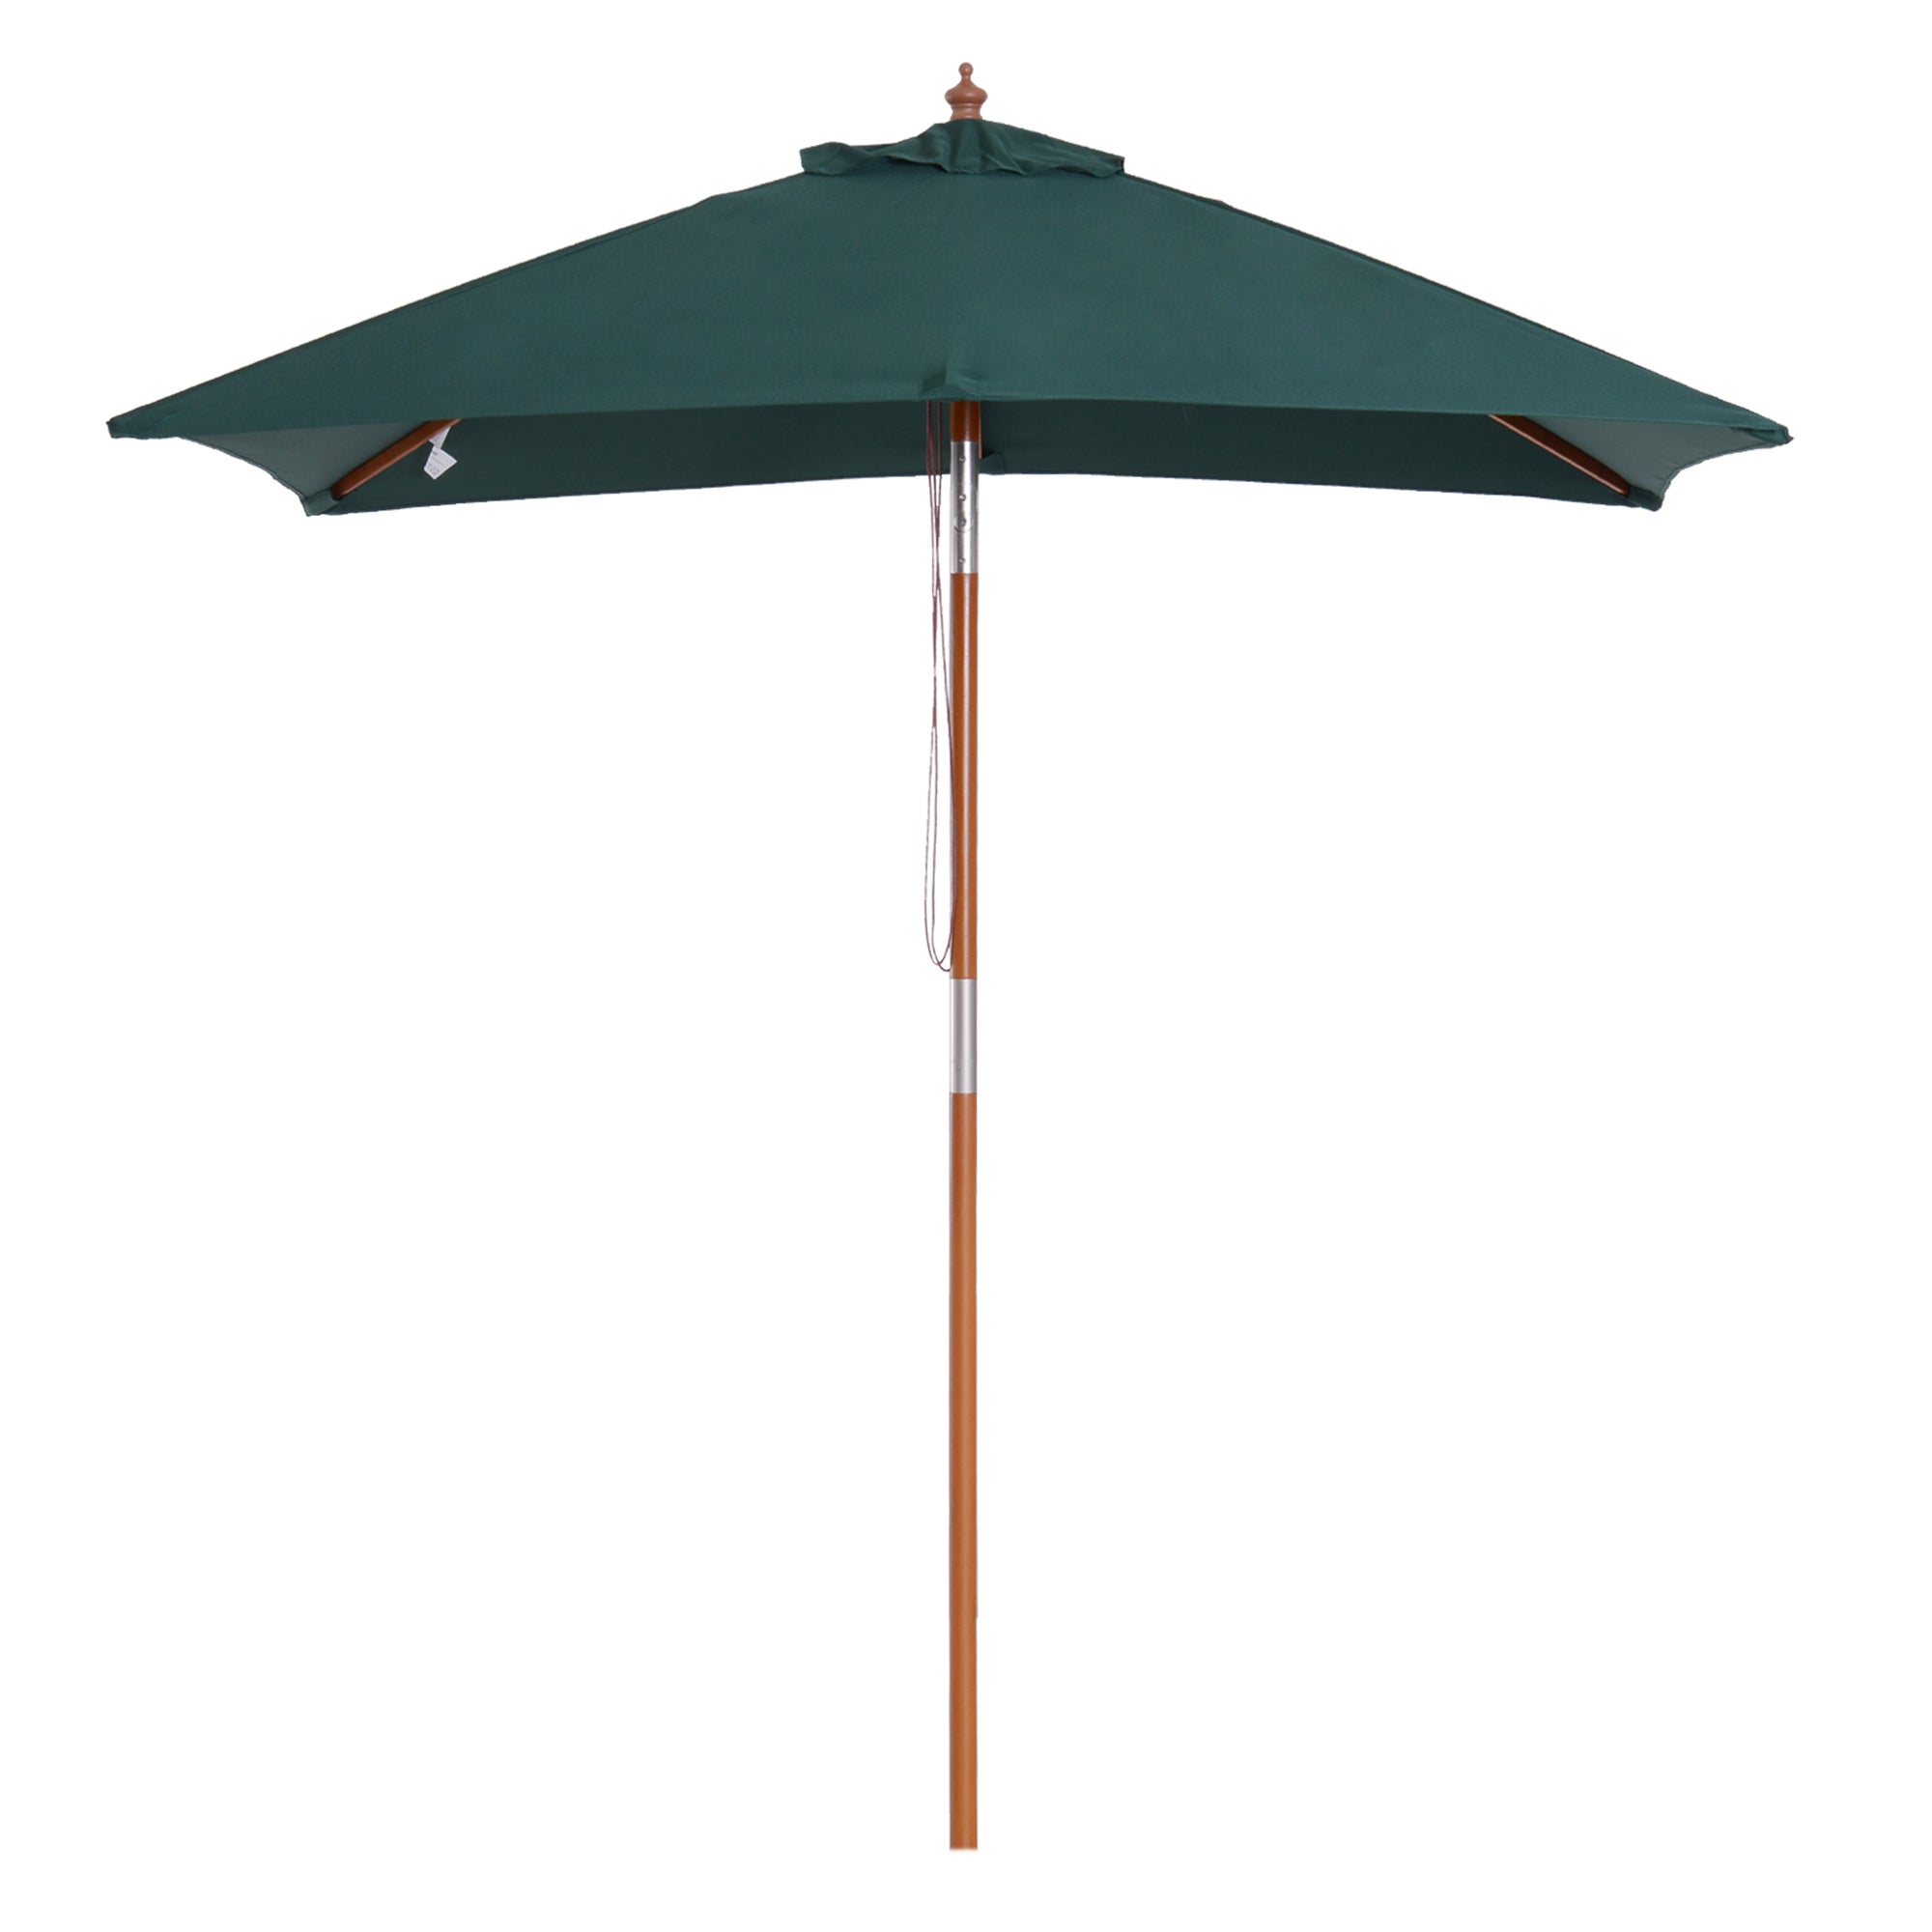 Outsunny Wooden Patio Umbrella Market Parasol Outdoor Sunshade 6 Ribs Green  | TJ Hughes